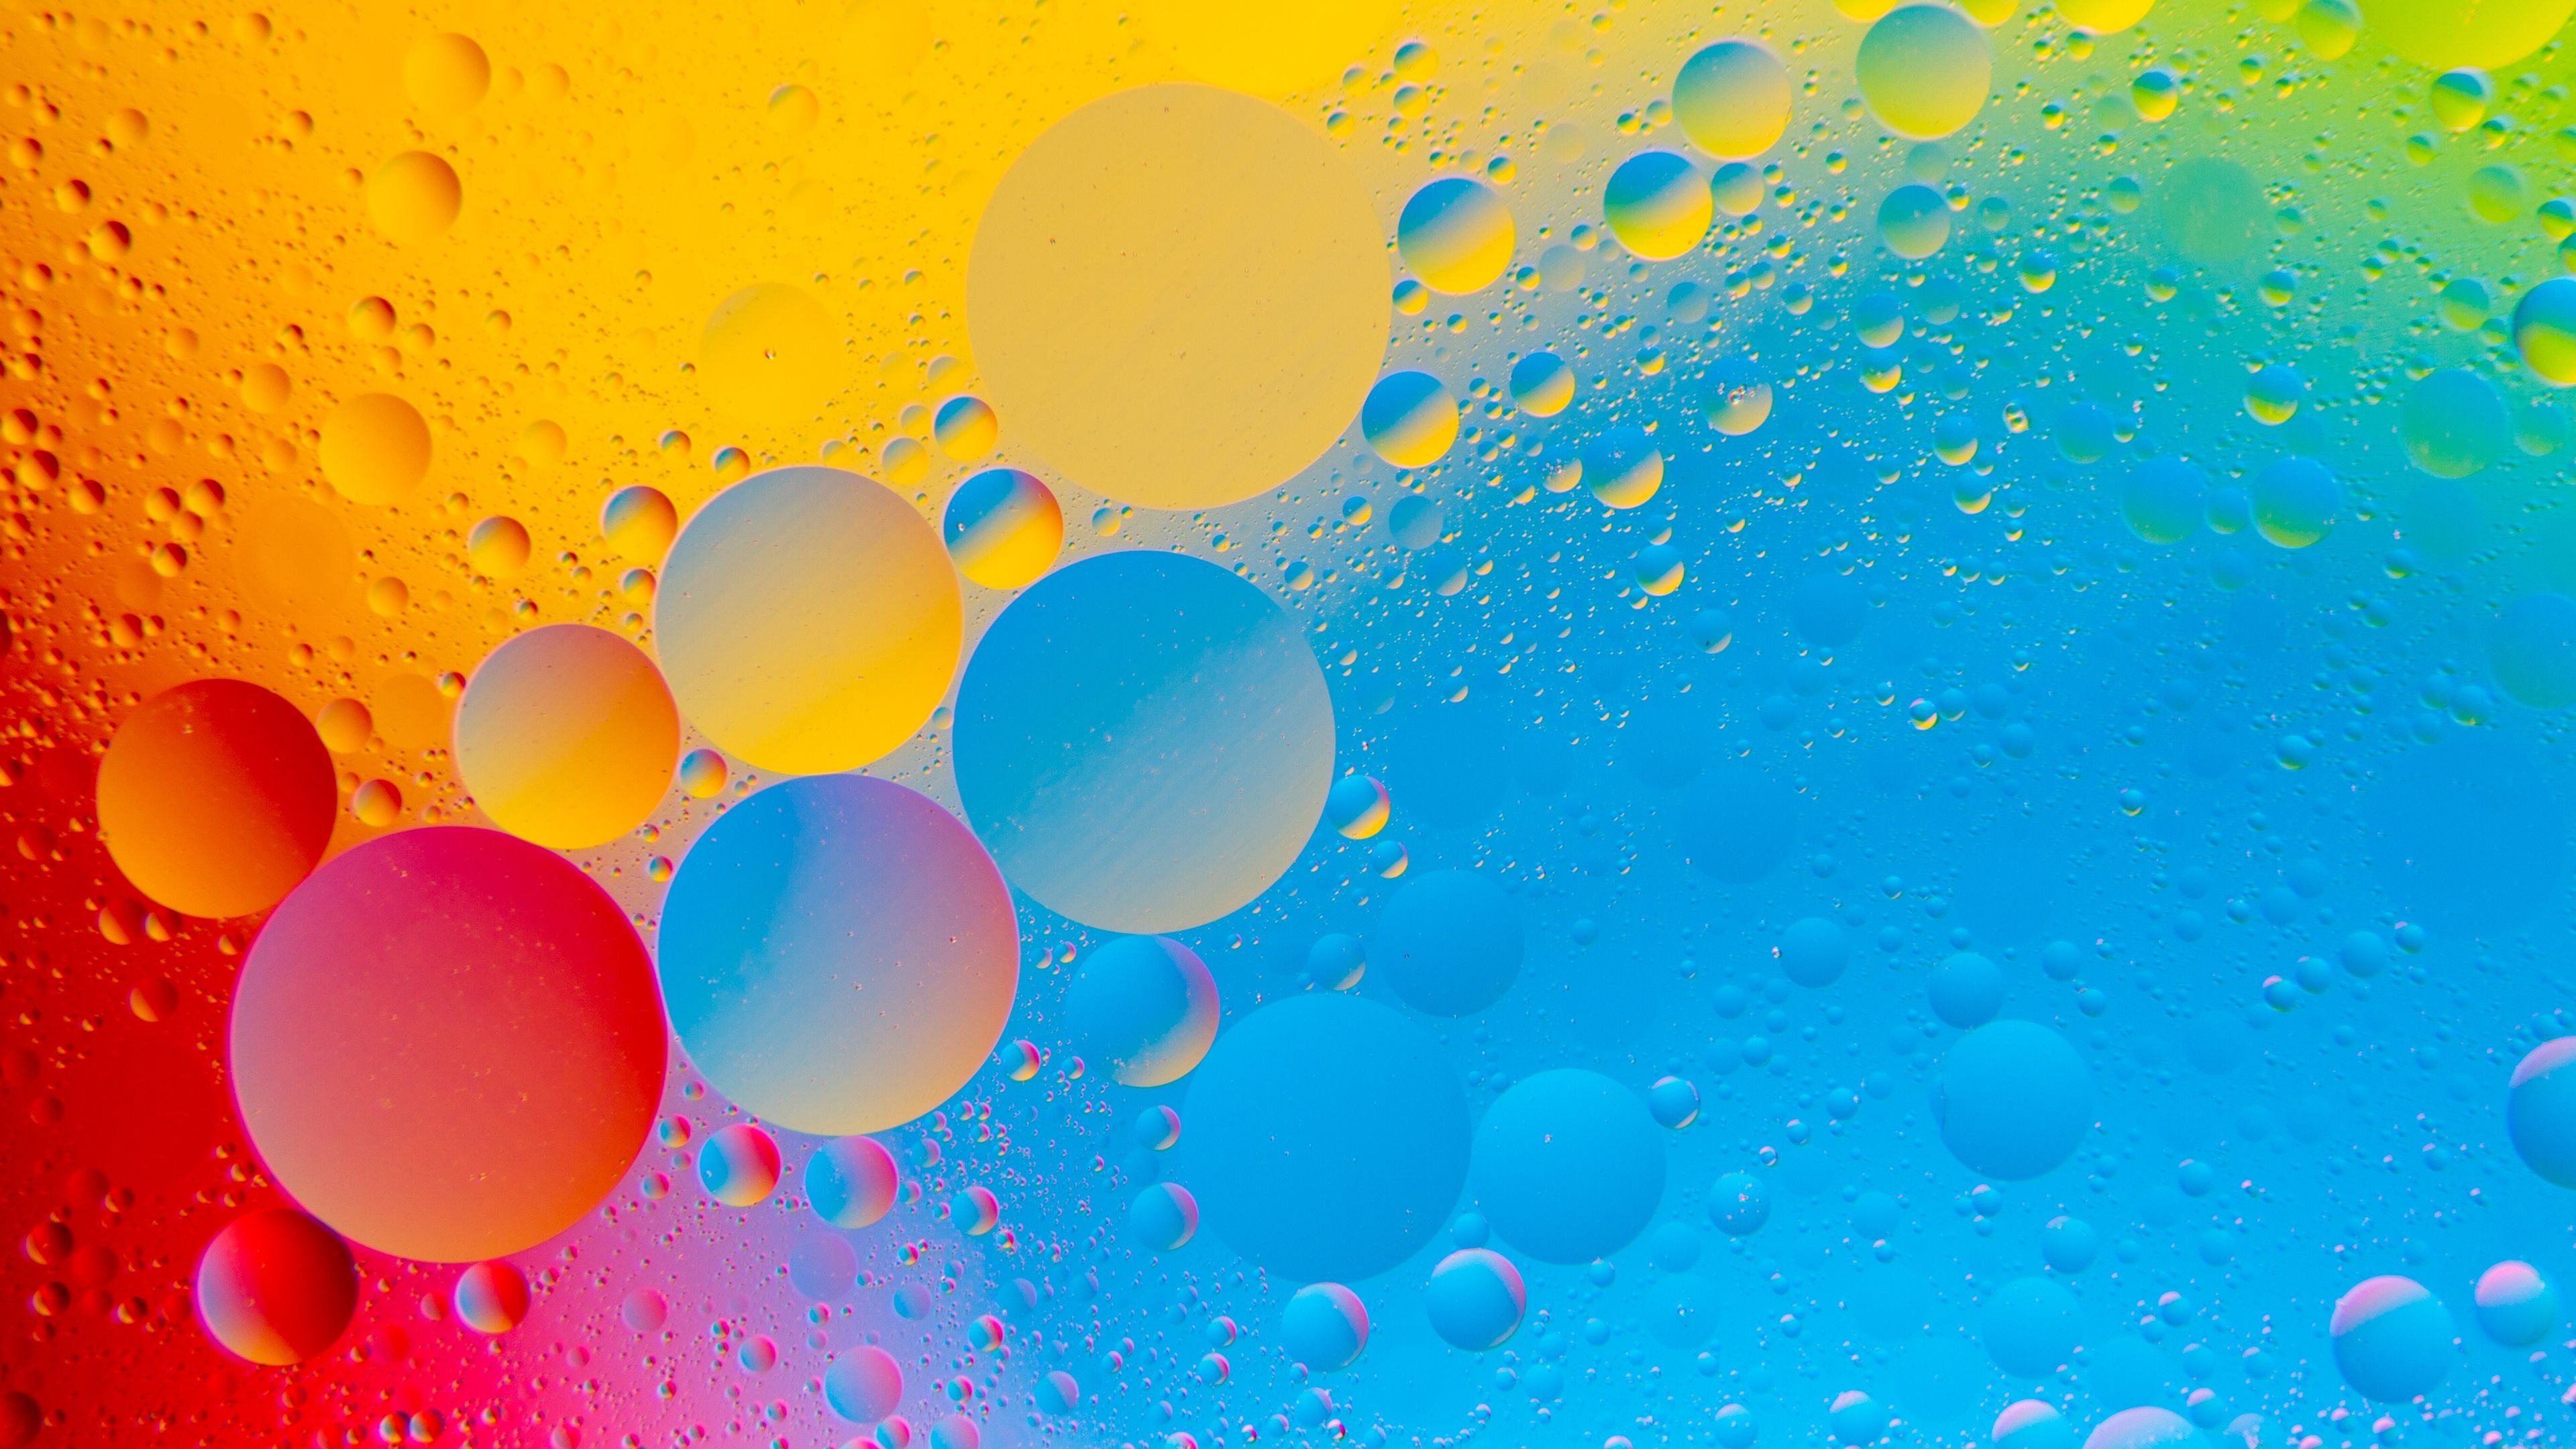 Colorful bubbles, Bubble explosion, Vivid bubble colors, Abstract bubble artwork, Bubble patterns, 3840x2160 4K Desktop